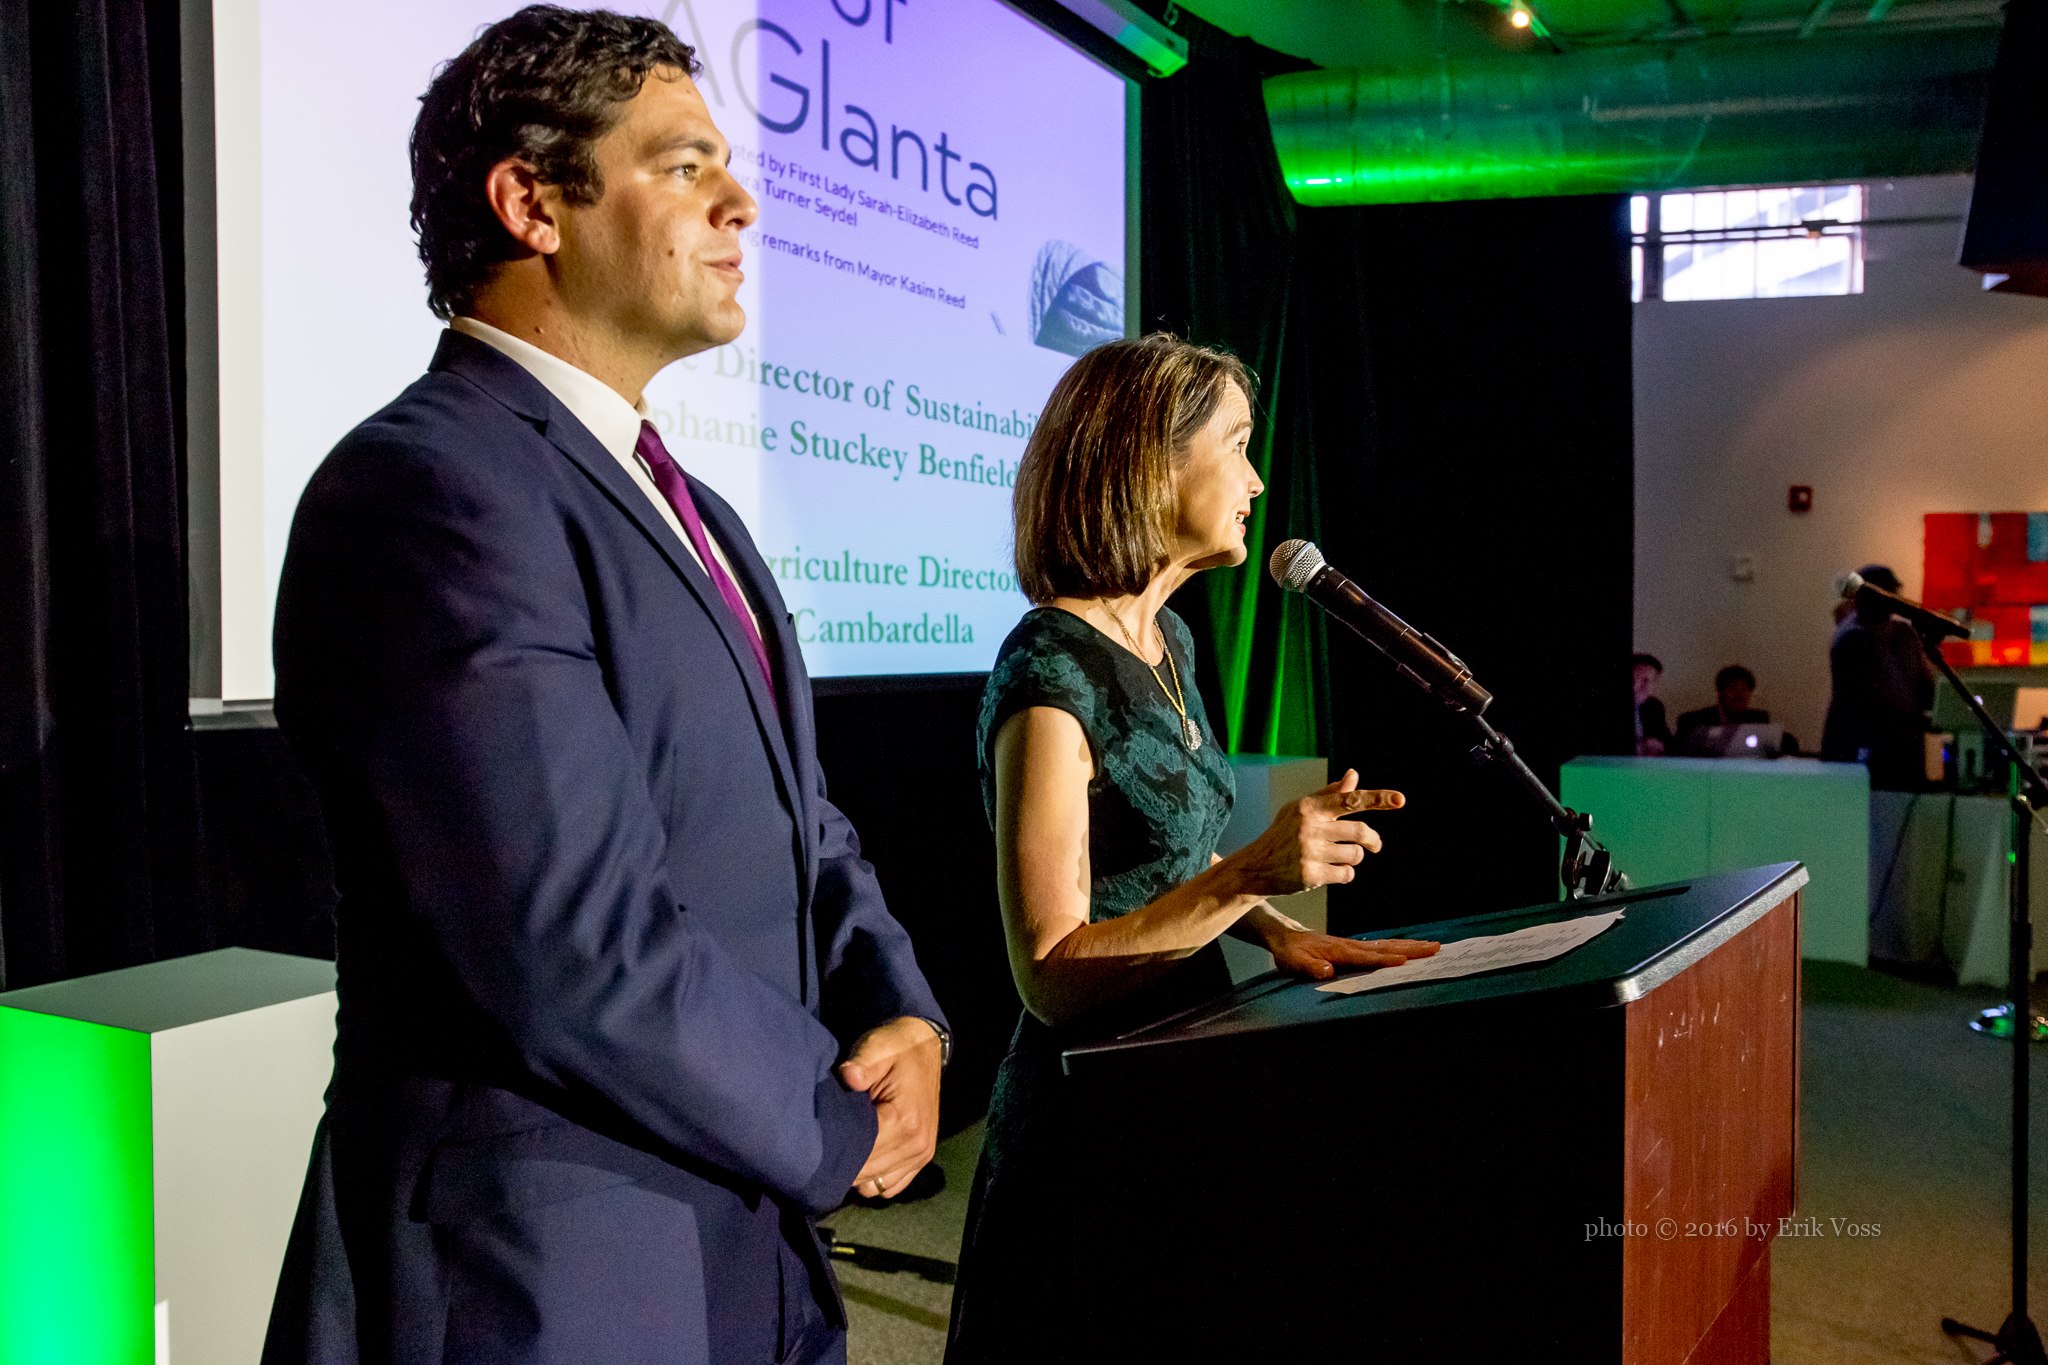 Atlanta’s Urban Agriculture Director, Mario Cambardella, will participate in the 2018 Aglanta Conference